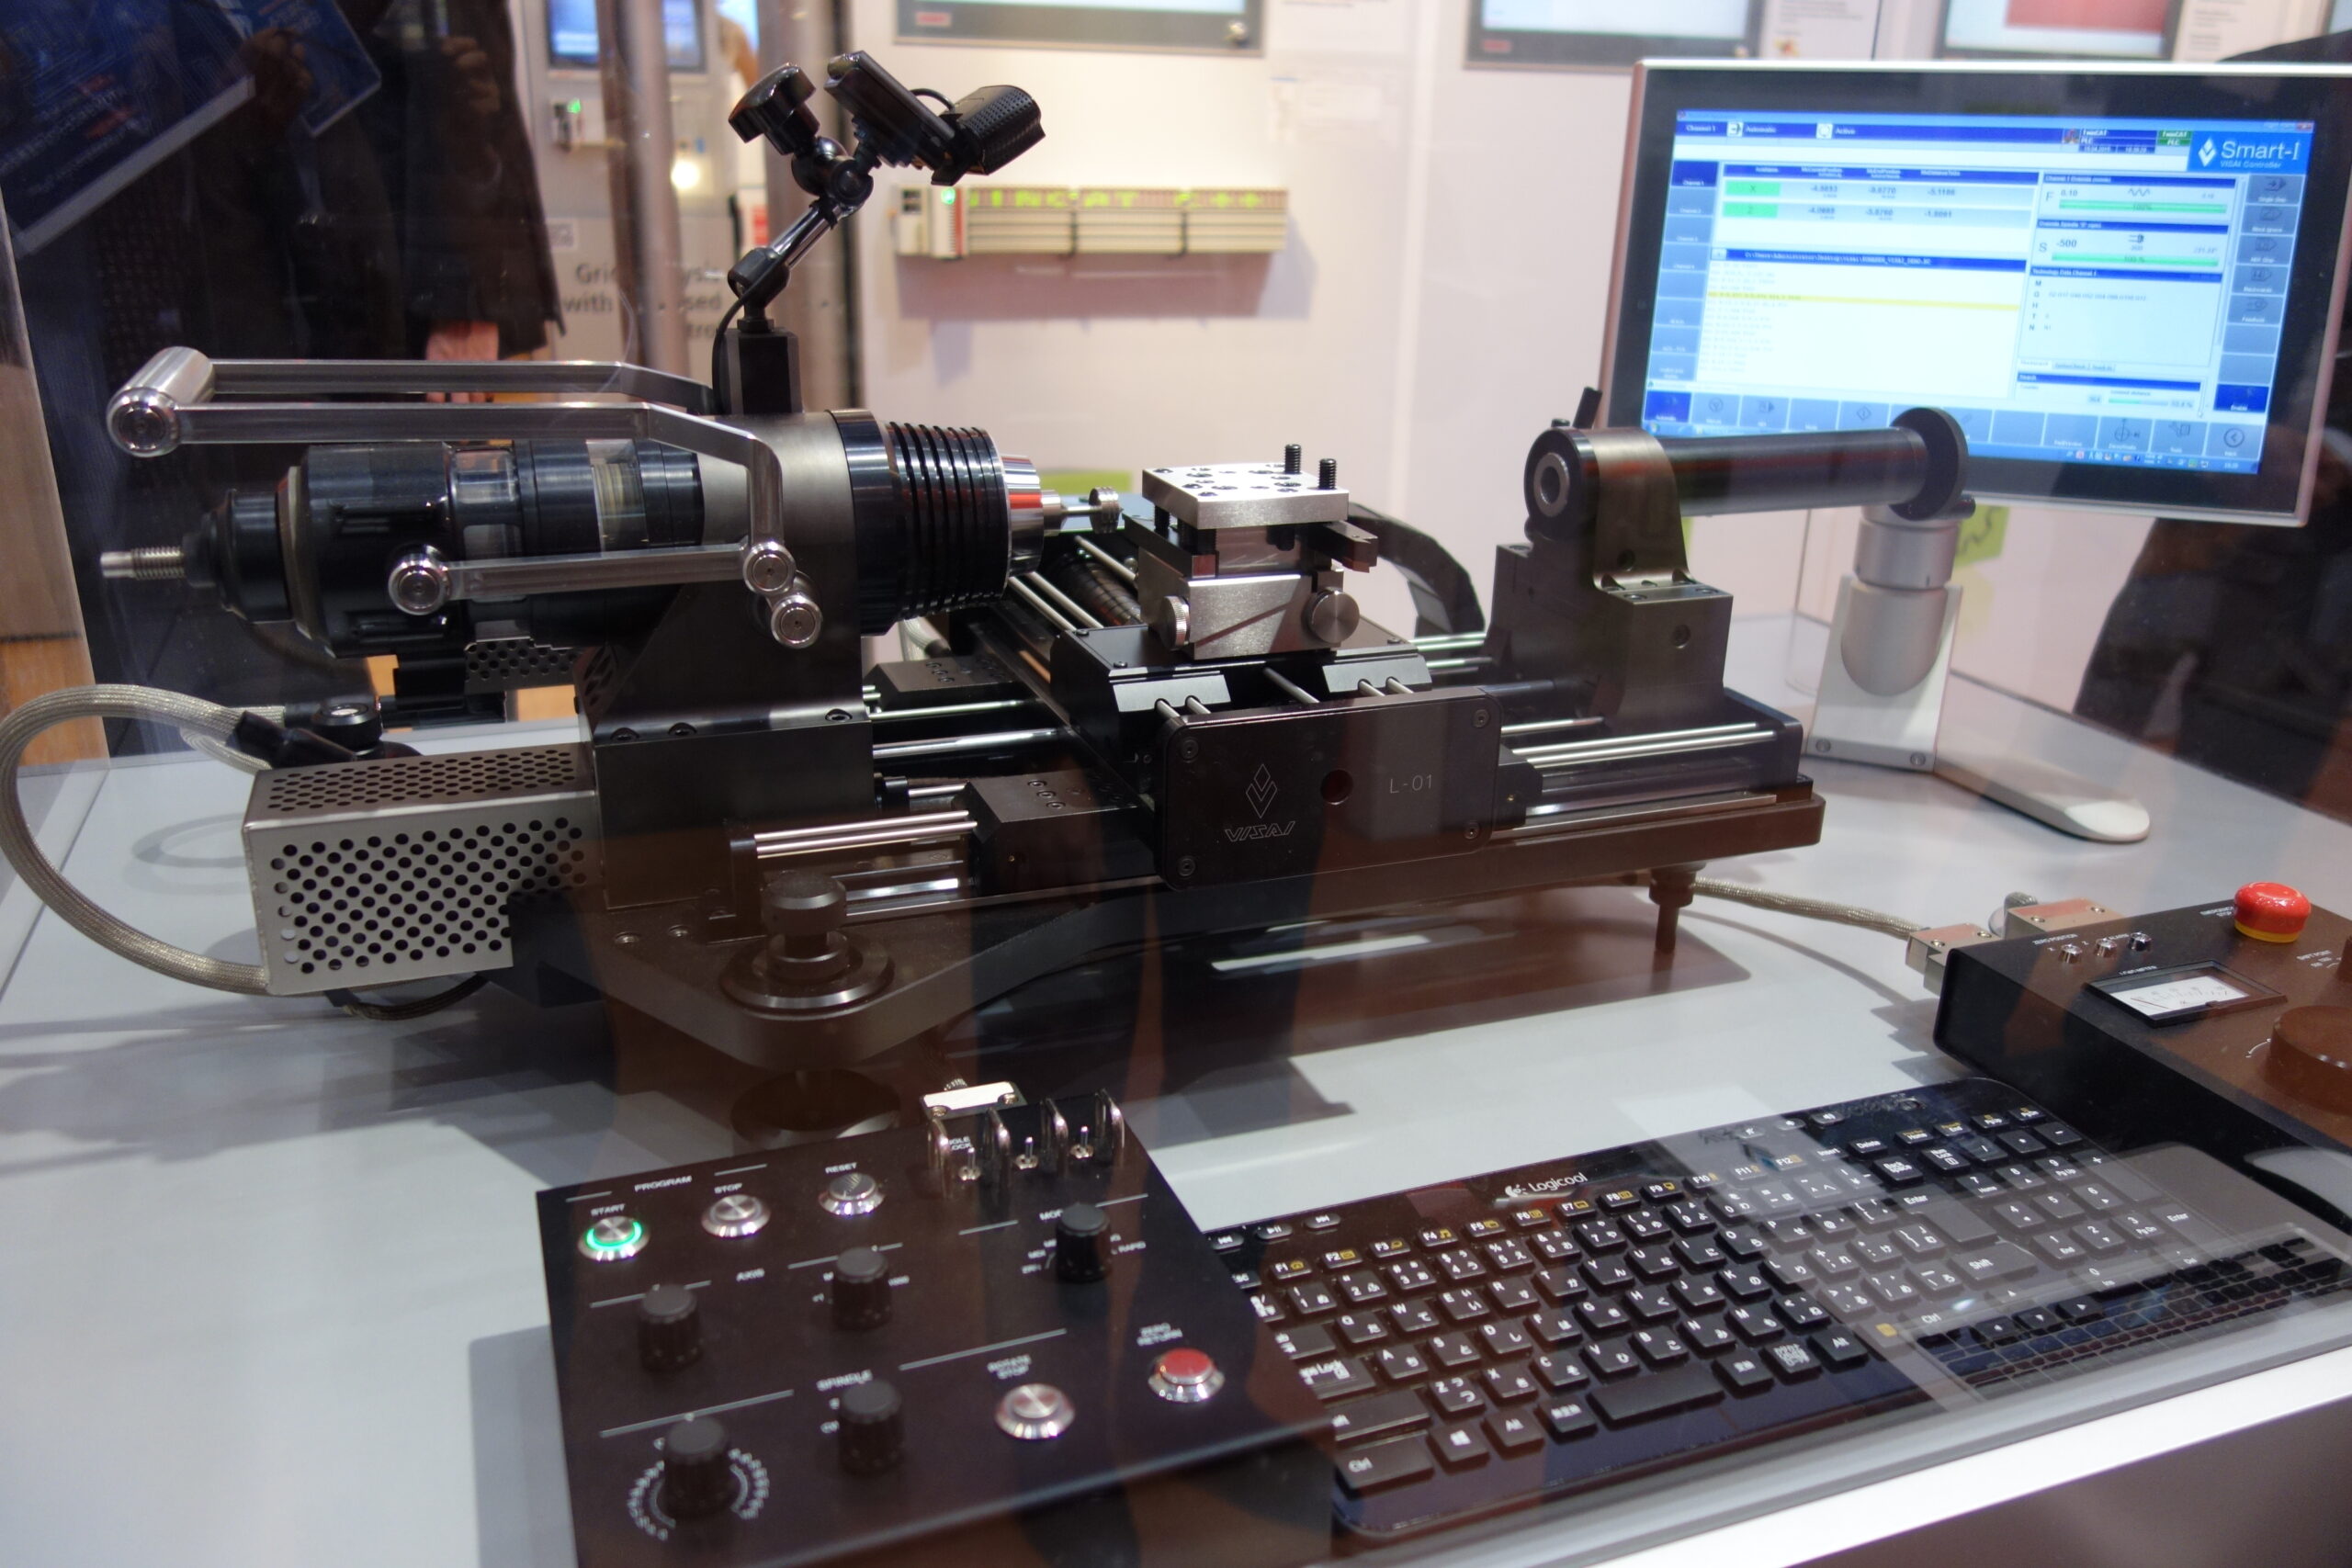 ベッコフ 碌々産業と由紀精密の開発に参画 デスクトップ型小型CNC旋盤「VISAI L-01」で